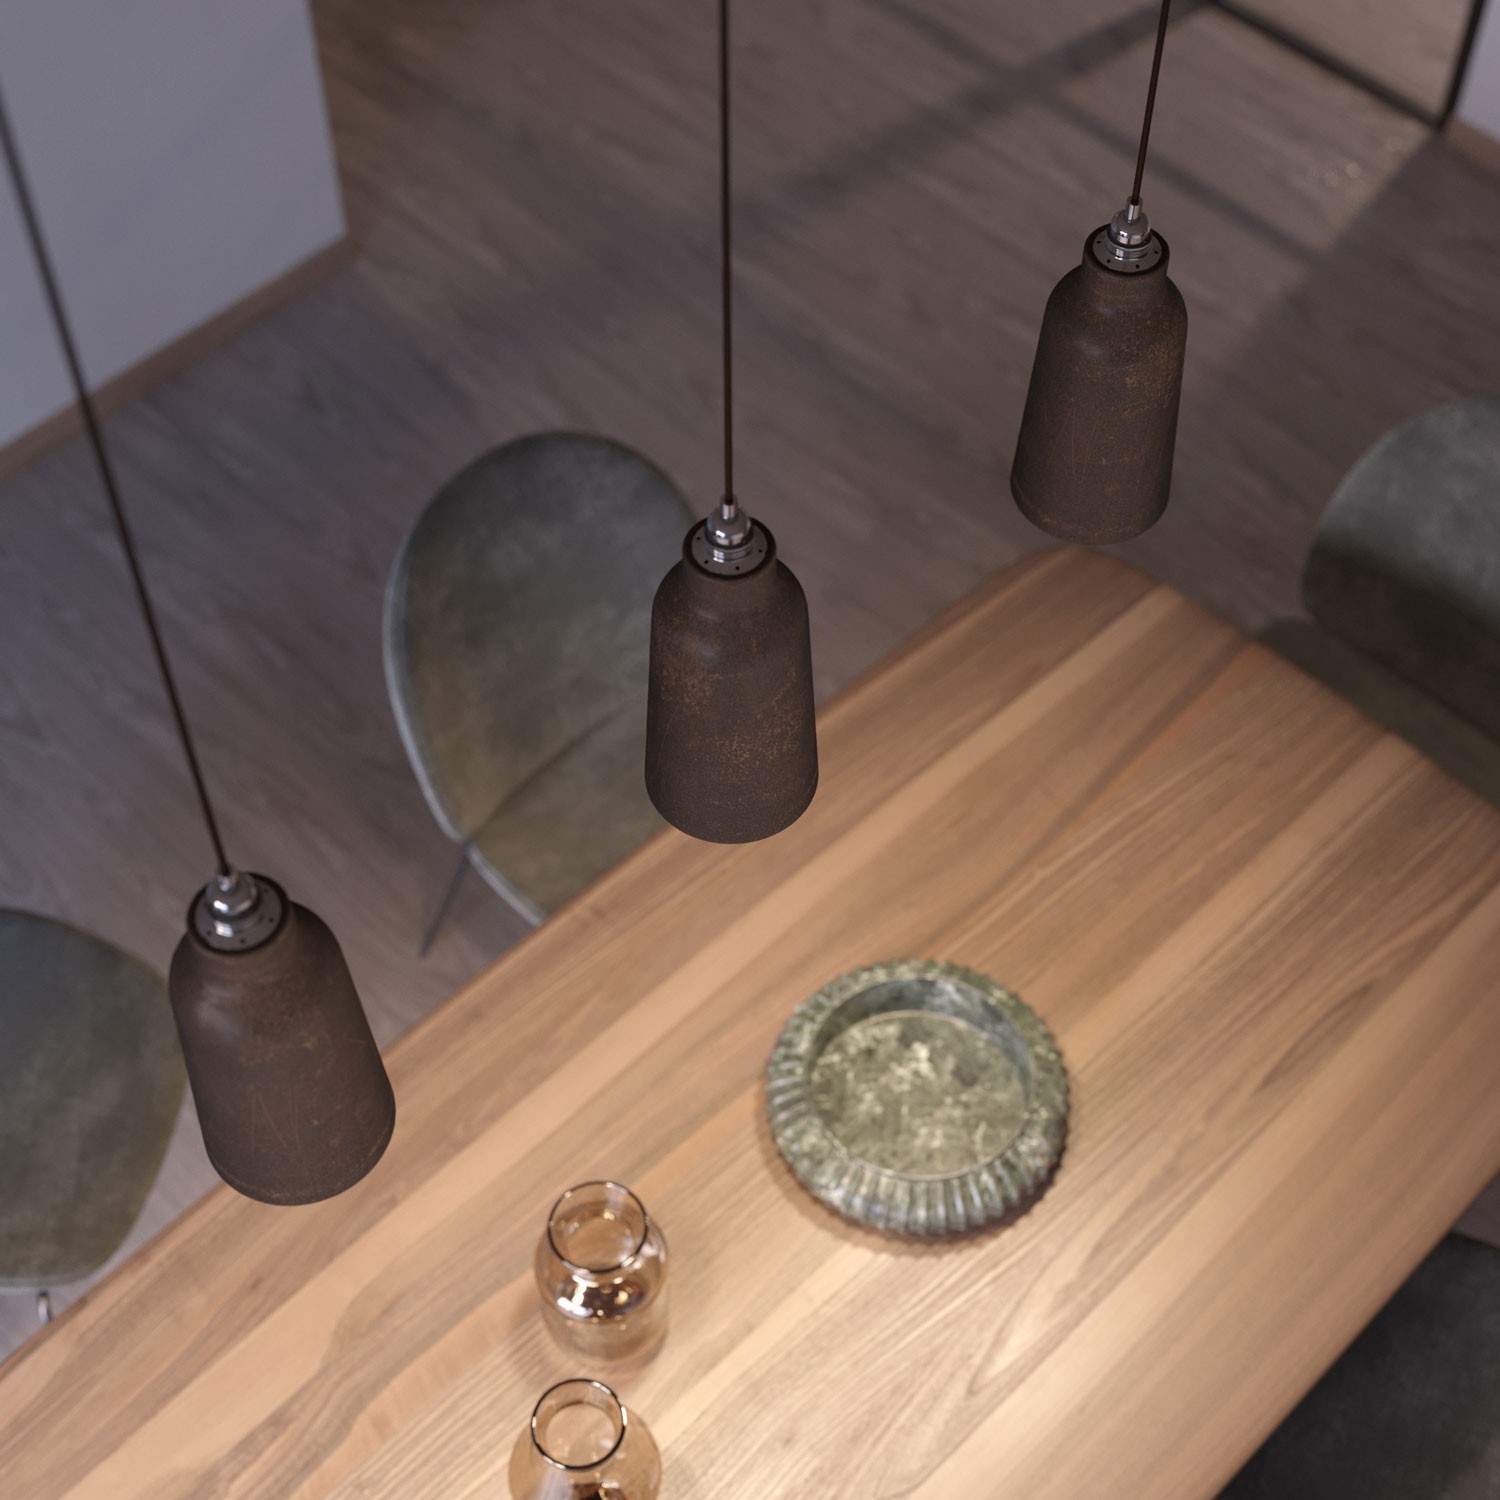 Lámpara colgante hecha en Italia con cable textil, pantalla Botella de cerámica y acabados metálicos